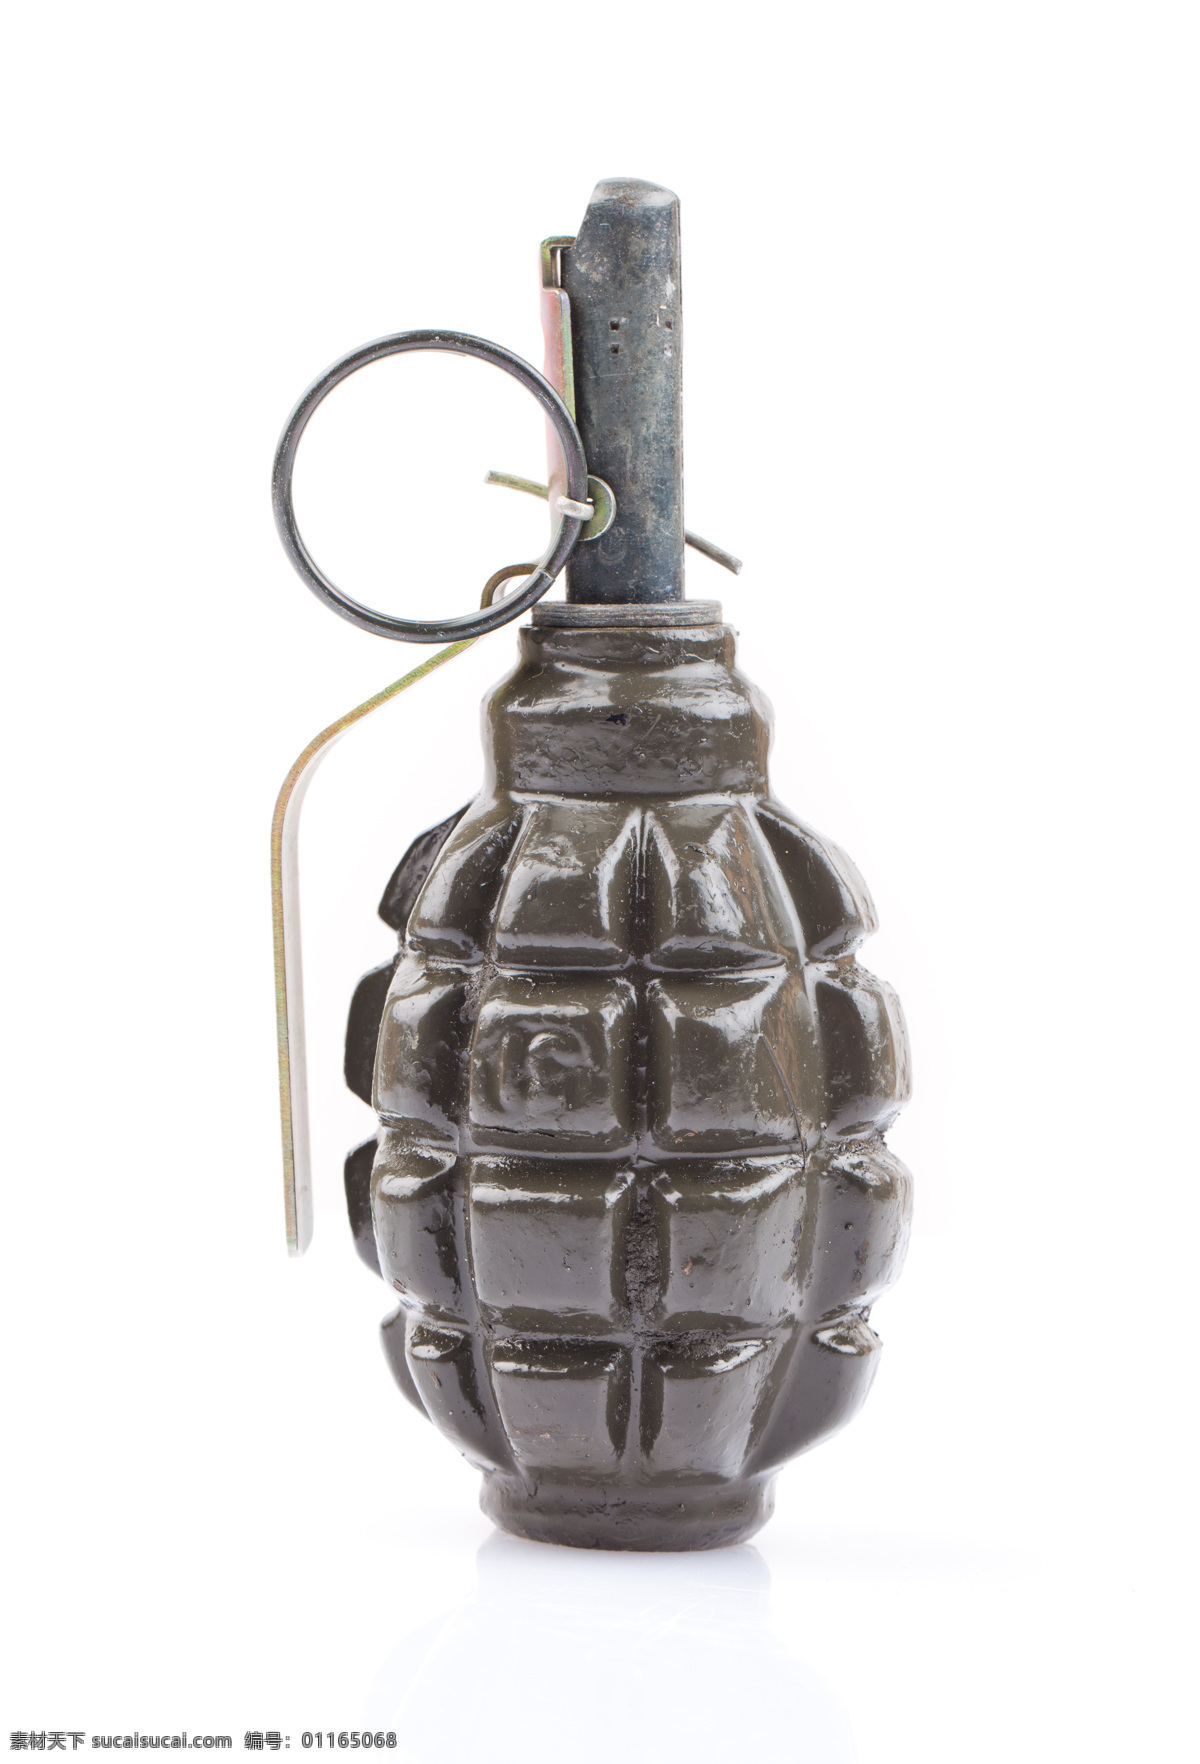 手雷 手榴弹 军事武器 武器装备 武装 现代科技